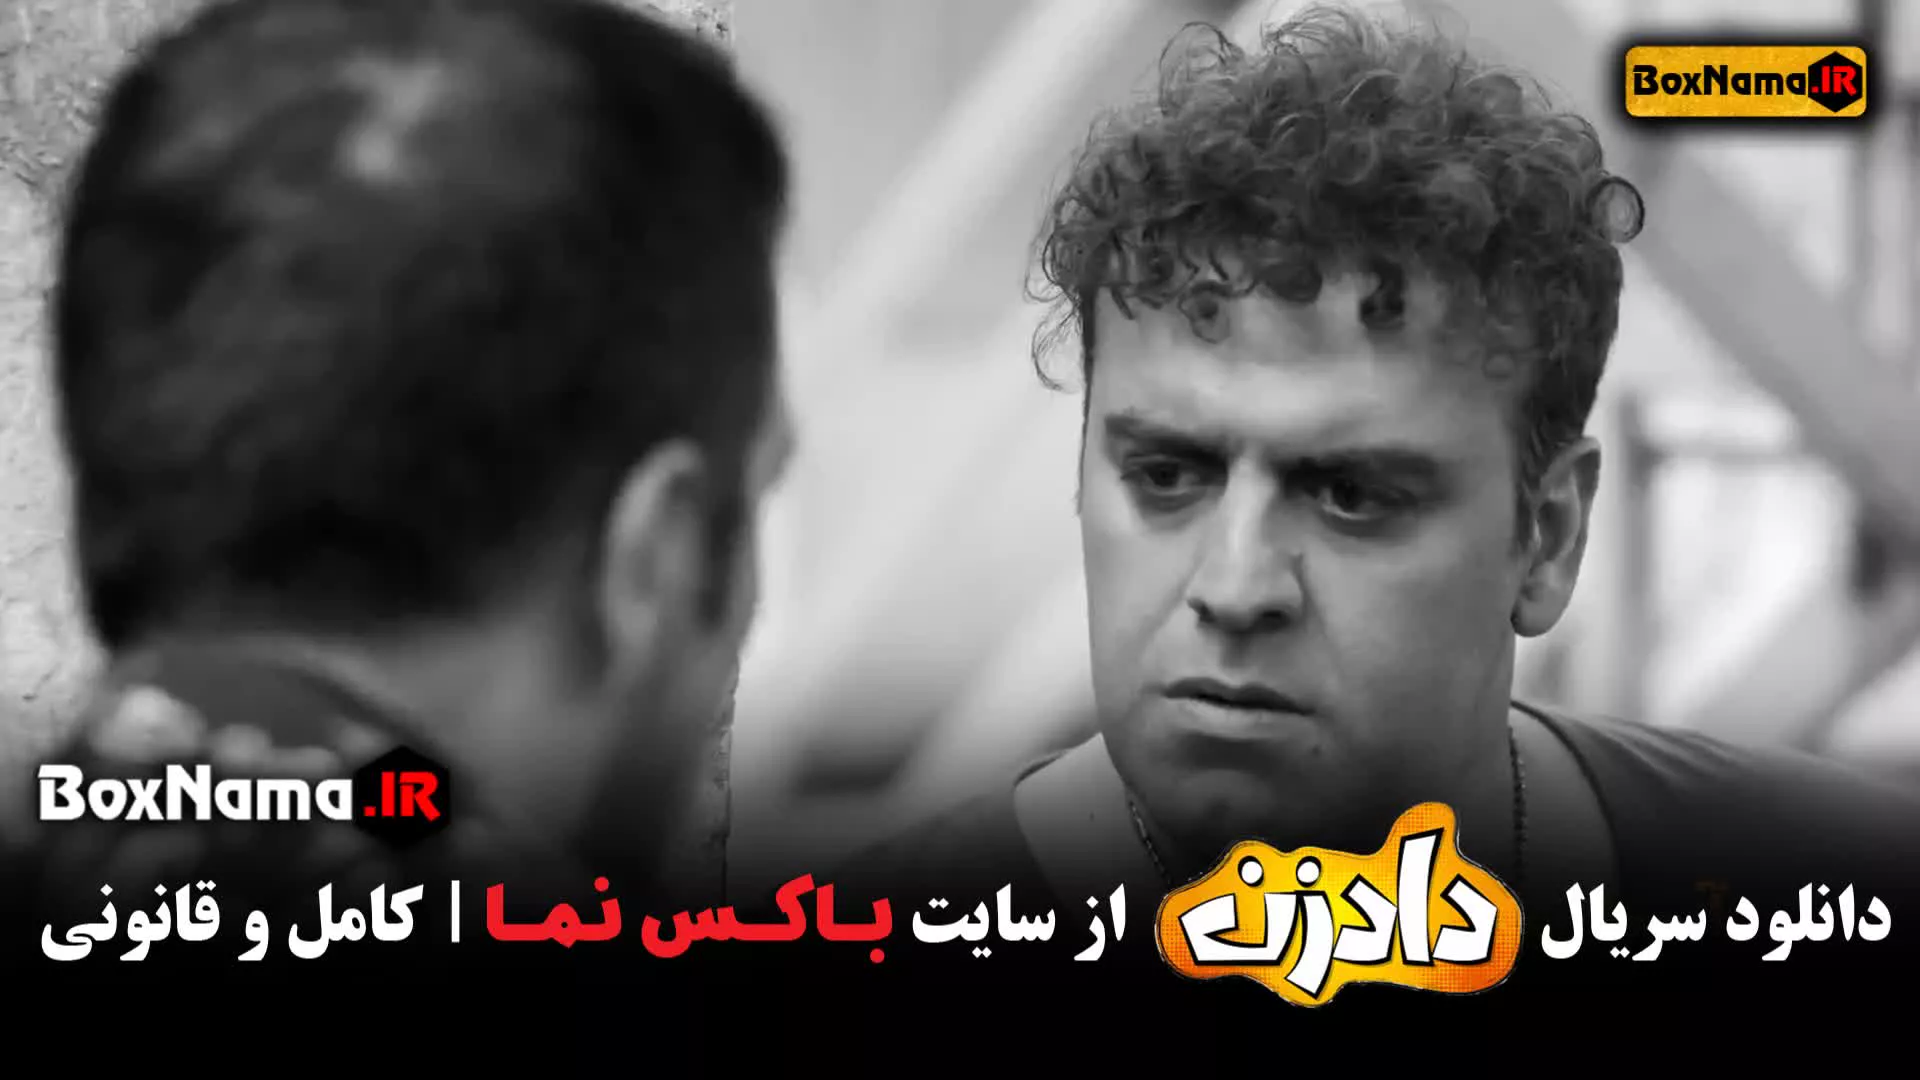 سریال طنز ایرانی دادزن ۱ تا ۸ (بهرنگ علوی - نسرین مقانلو)